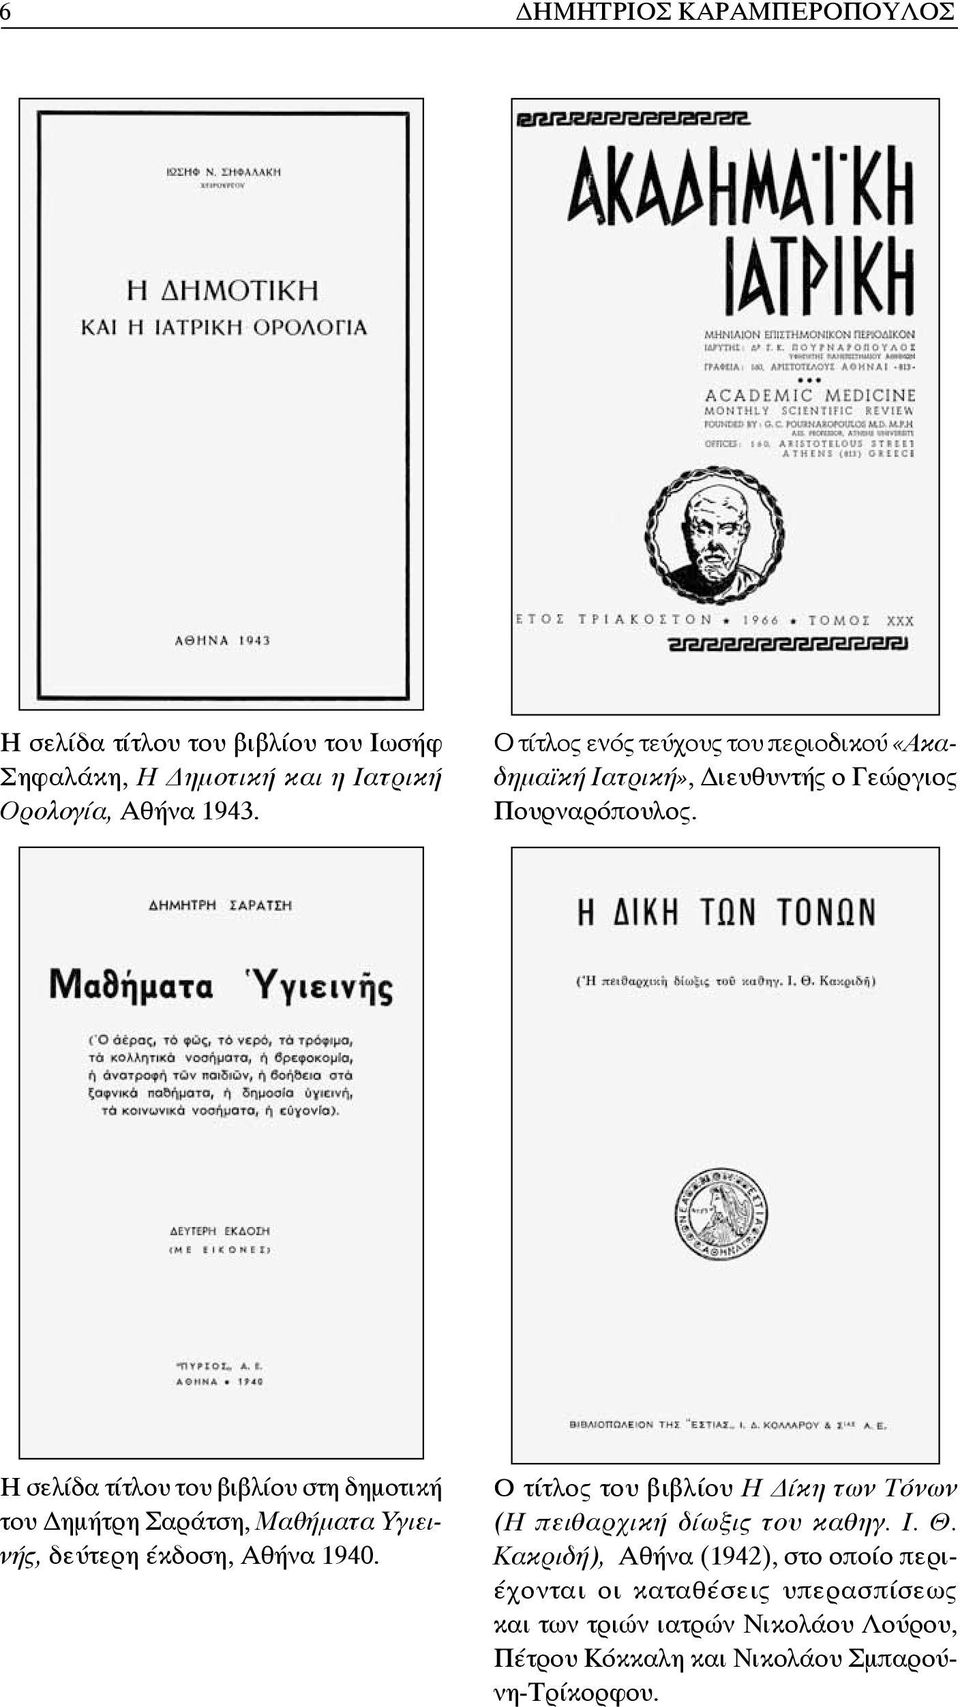 Η σελίδα τίτλου του βιβλίου στη δημοτική του ημήτρη Σαράτση, Μαθήματα Υγιεινής, δεύτερη έκδοση, Αθήνα 1940.